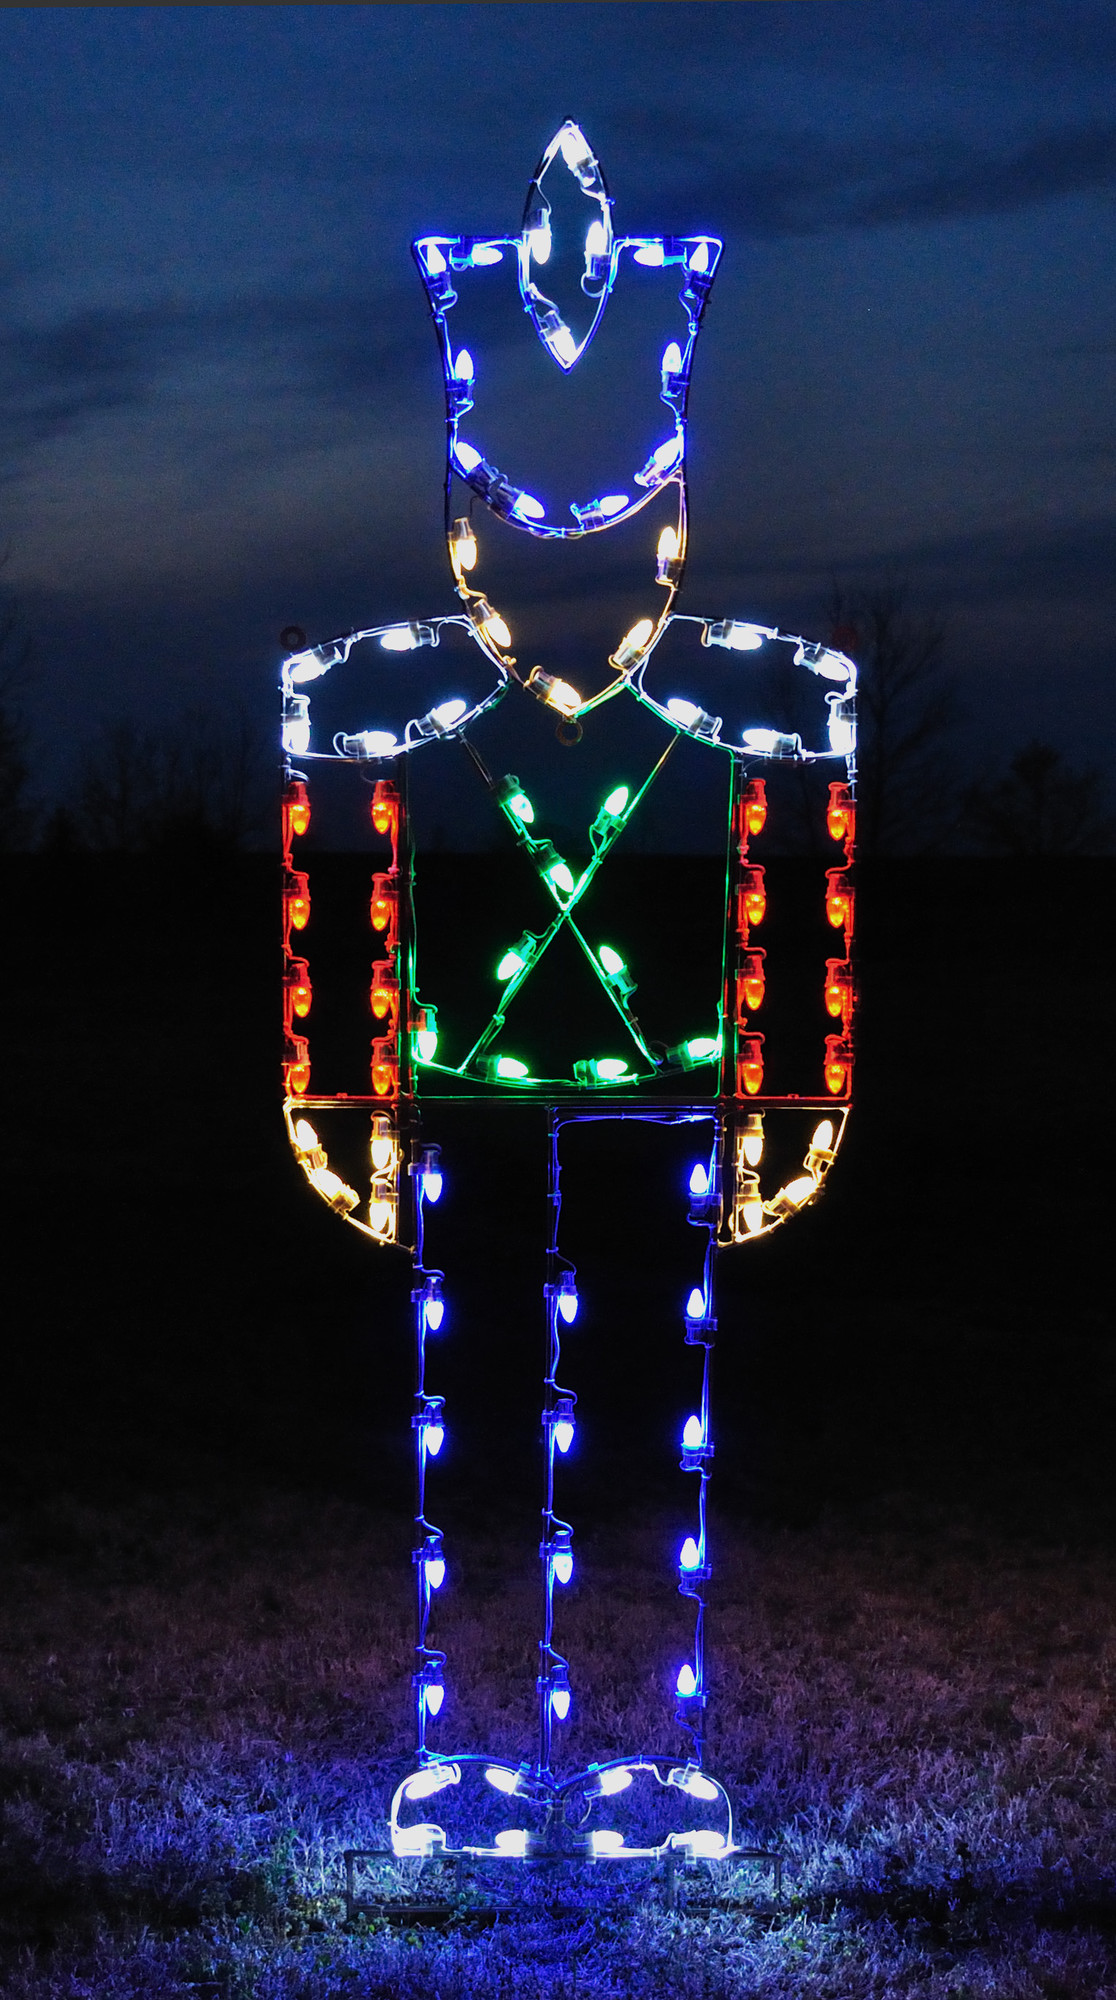 Outdoor Christmas Light Display